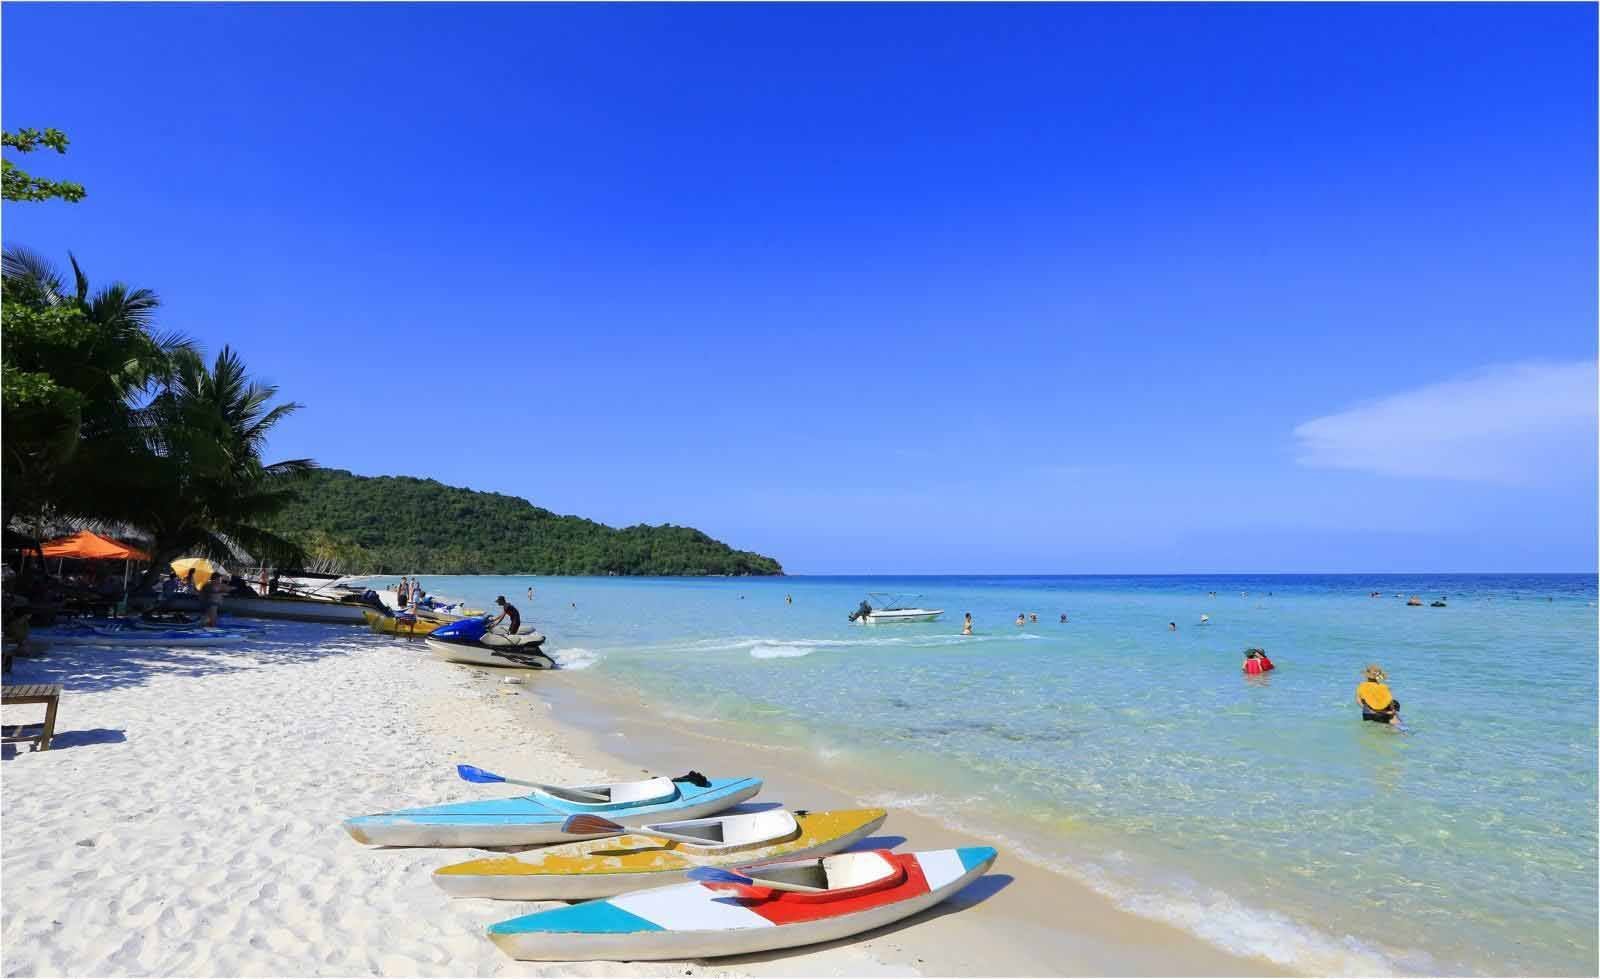 Чем интересен для туристов остров фукуок во вьетнаме?